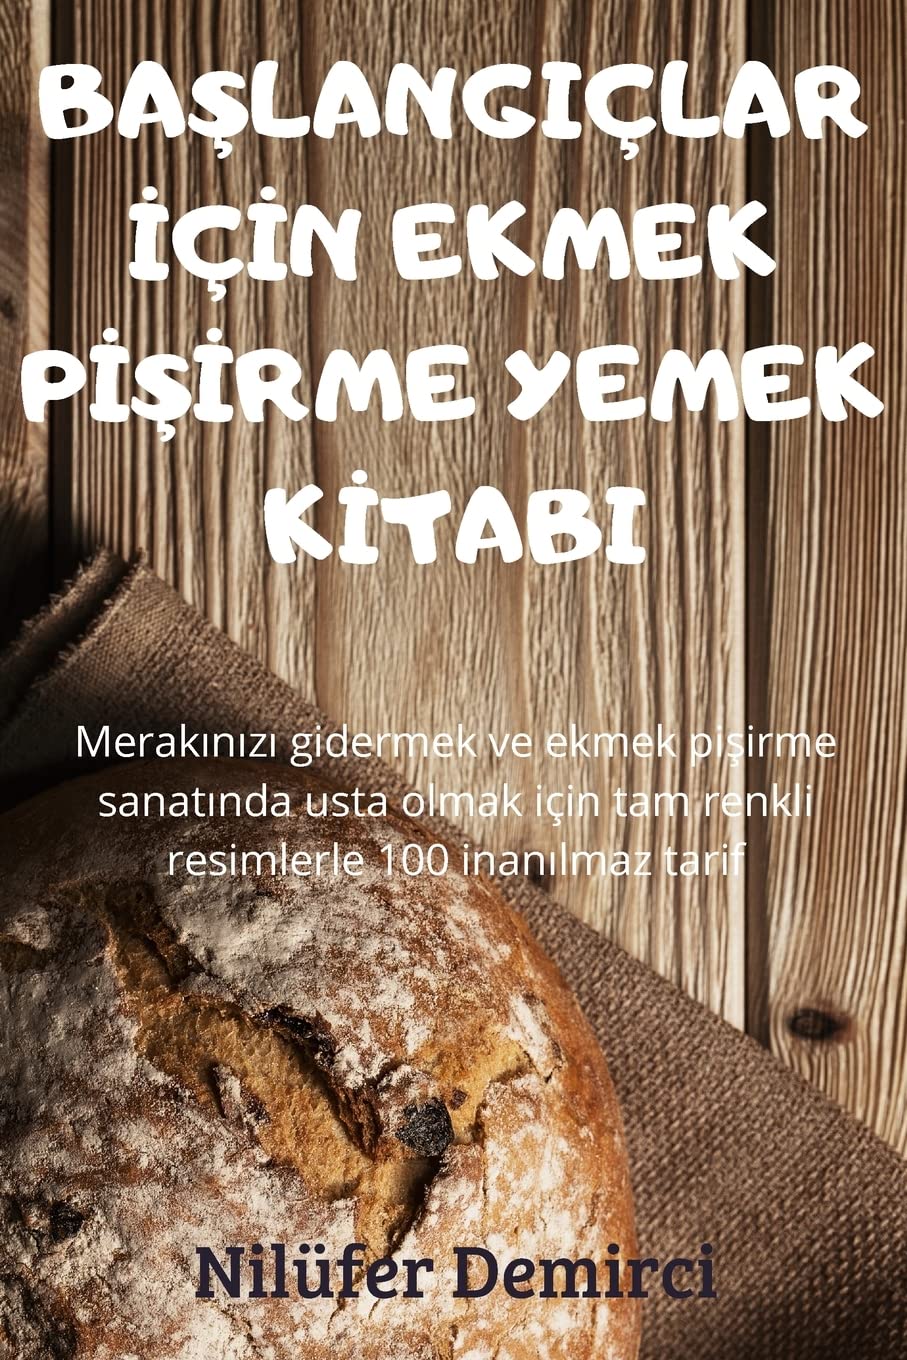 BaŞlangiçlar İçİn Ekmek PİŞİrme Yemek Kİtabi (Turkish Edition)